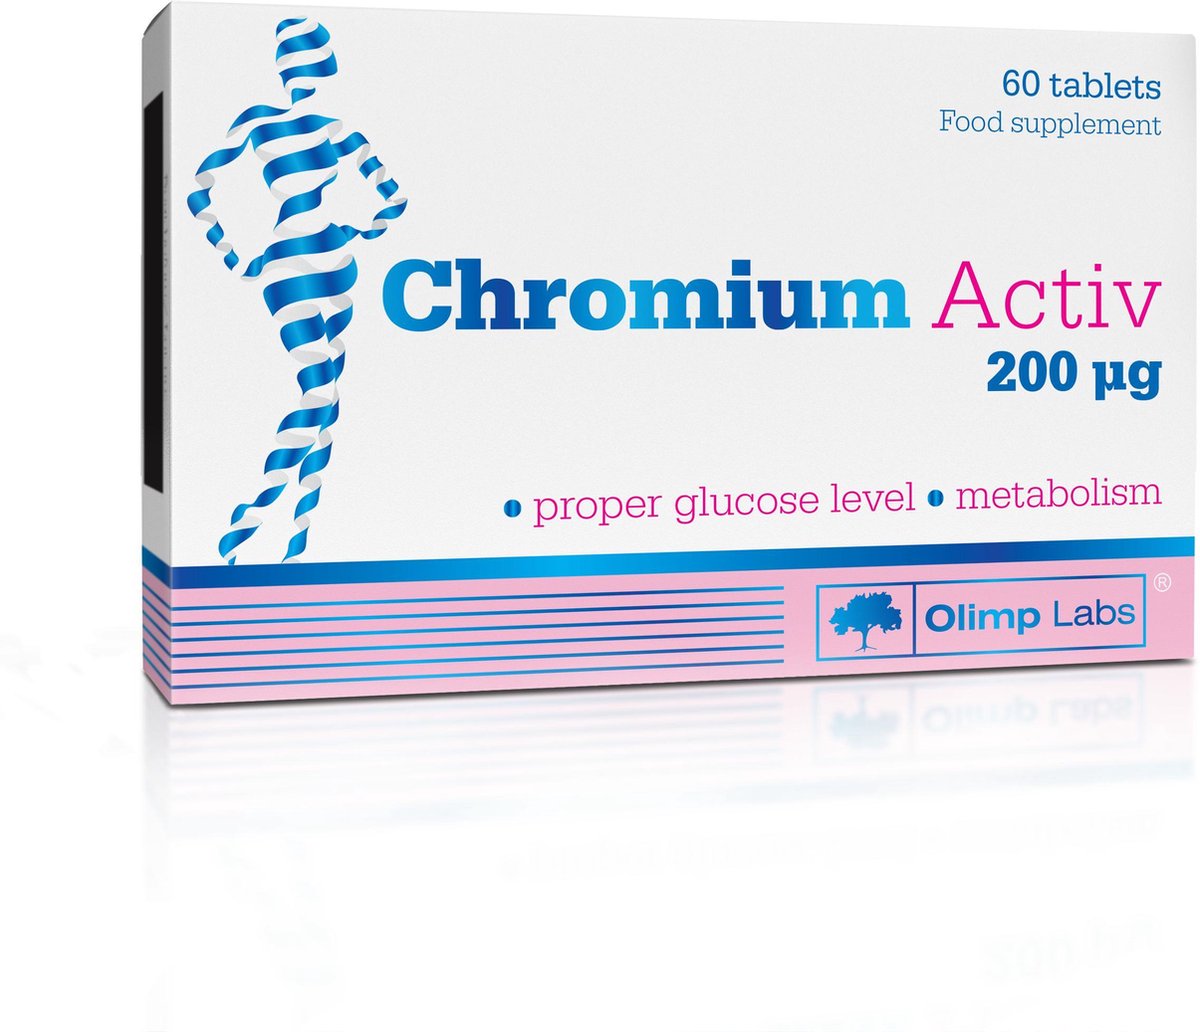 Chromium Active, 200 μg, 60 tablets, het product is bedoeld als aanvulling op de dagelijkse inname van chroom, vooral voor mensen die veel snoep eten, afvallen en voor mensen met overgewicht en obesitas. - Olimp Labs